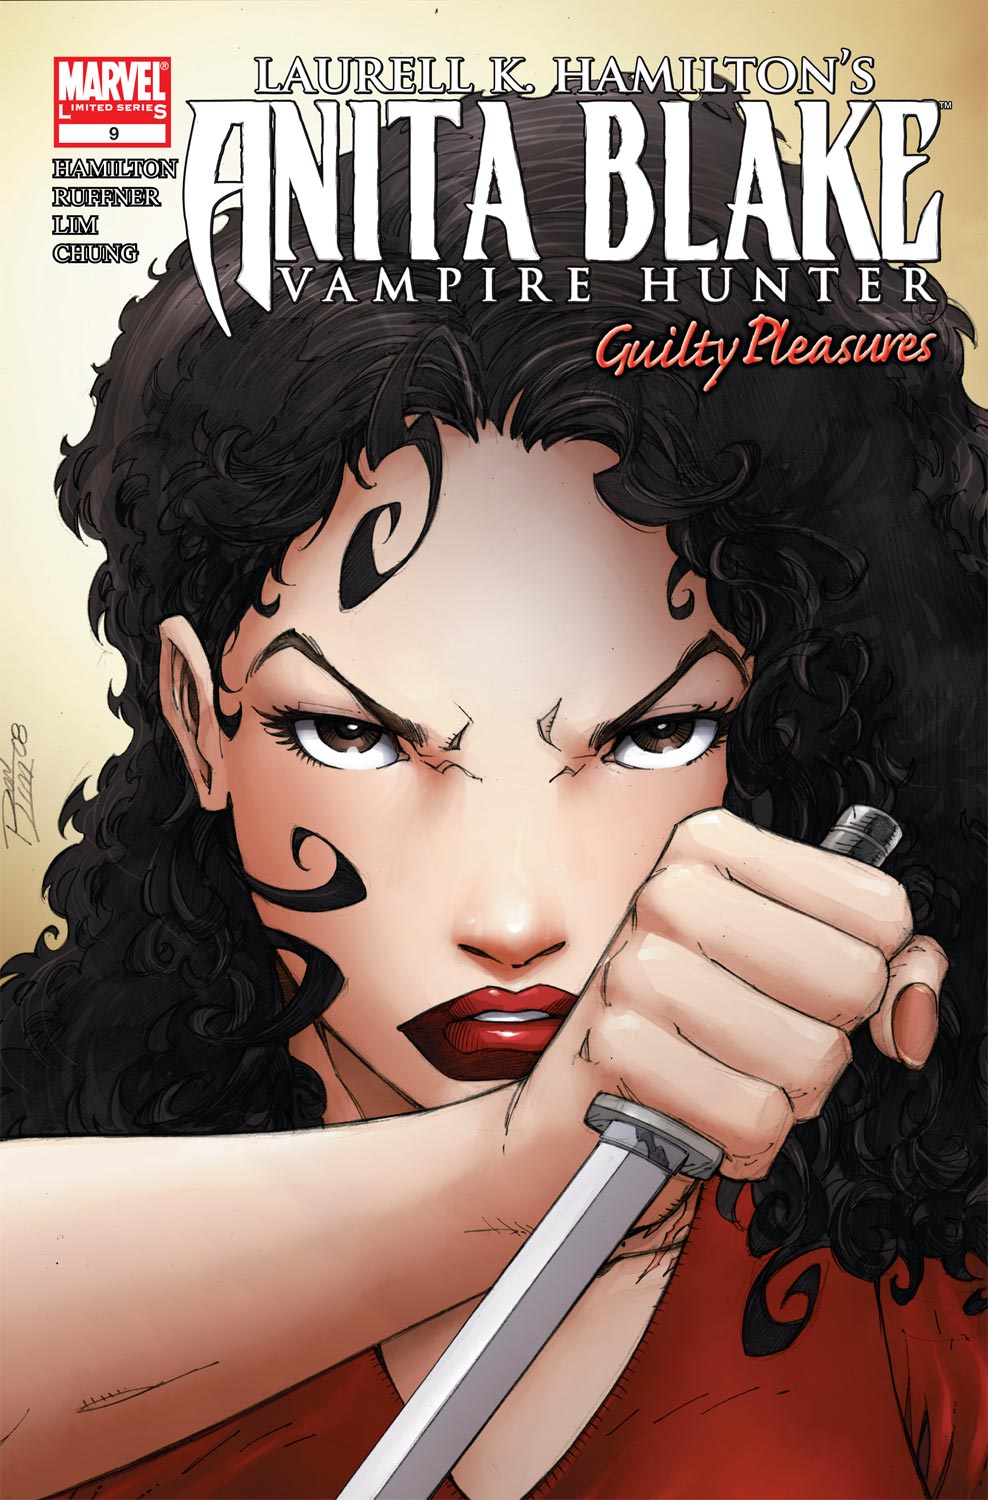 Anita Blake, Vampire Hunter: Guilty Pleasures (2006) #9